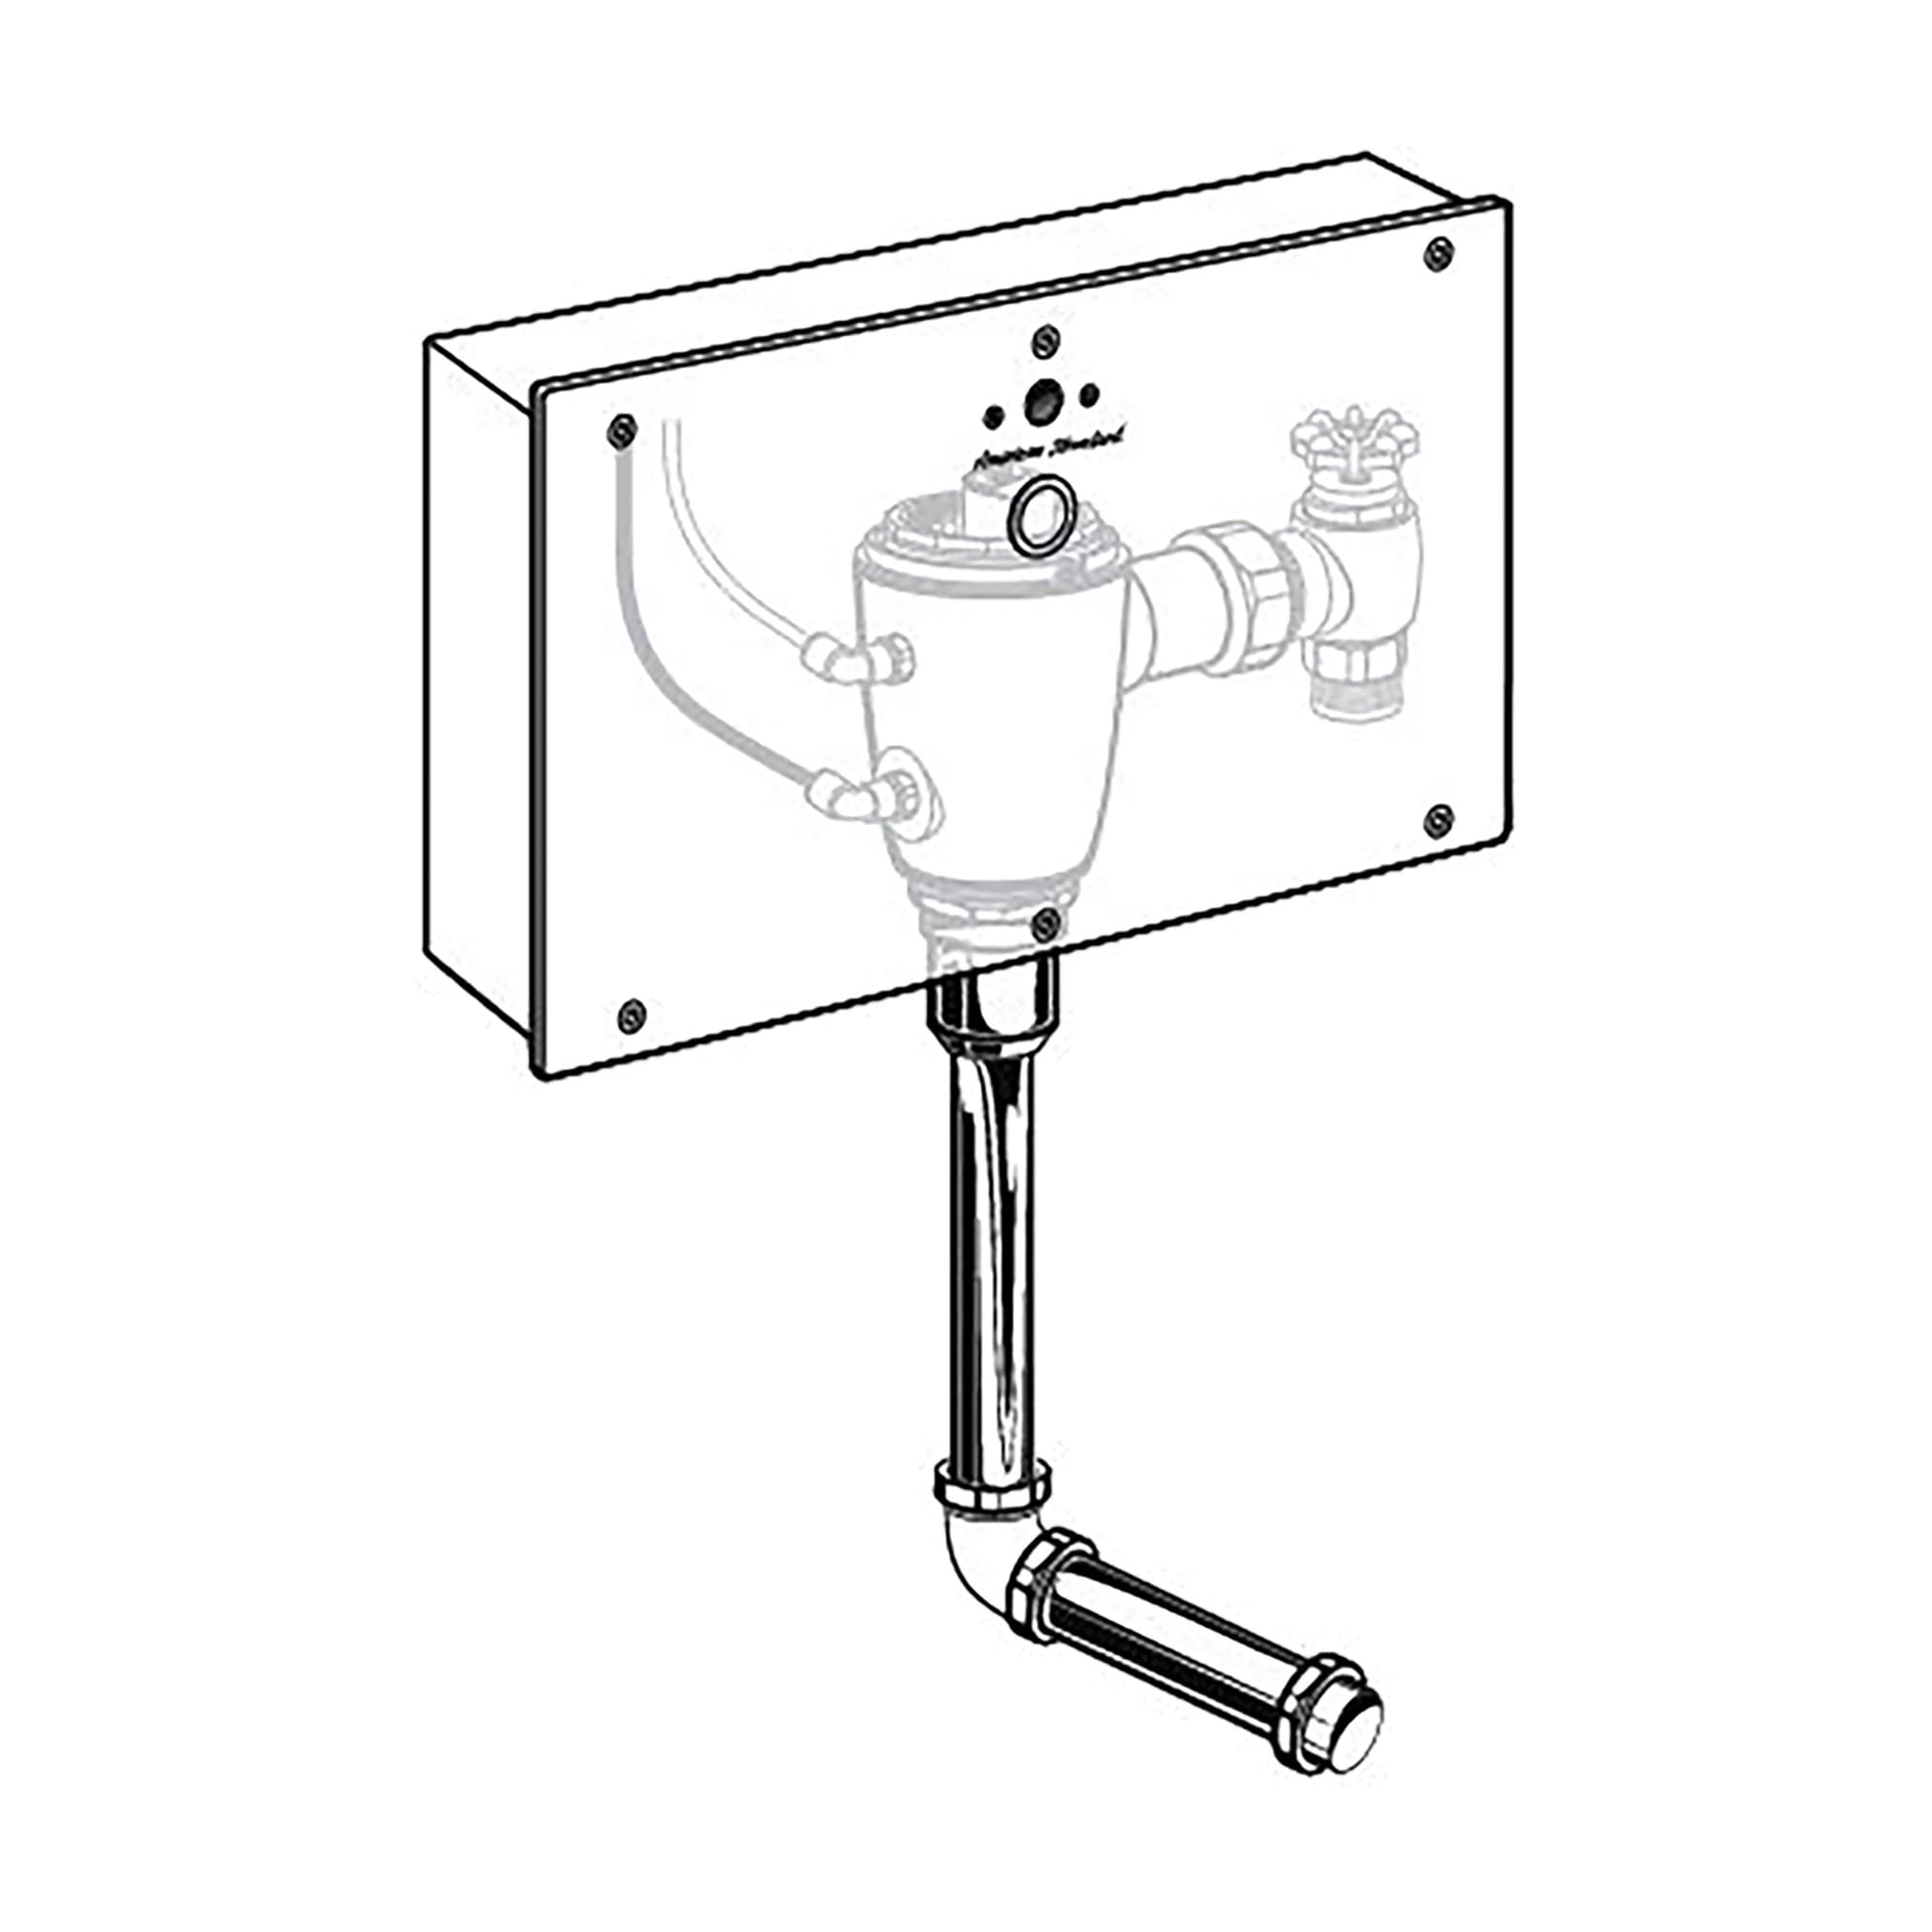 Ultima™ Selectronic - robinet de chasse pour urinoir, dissimulé dans un boîtier mural, modèle de base, de type à piston, 0,5 gpc/1,9 lpc